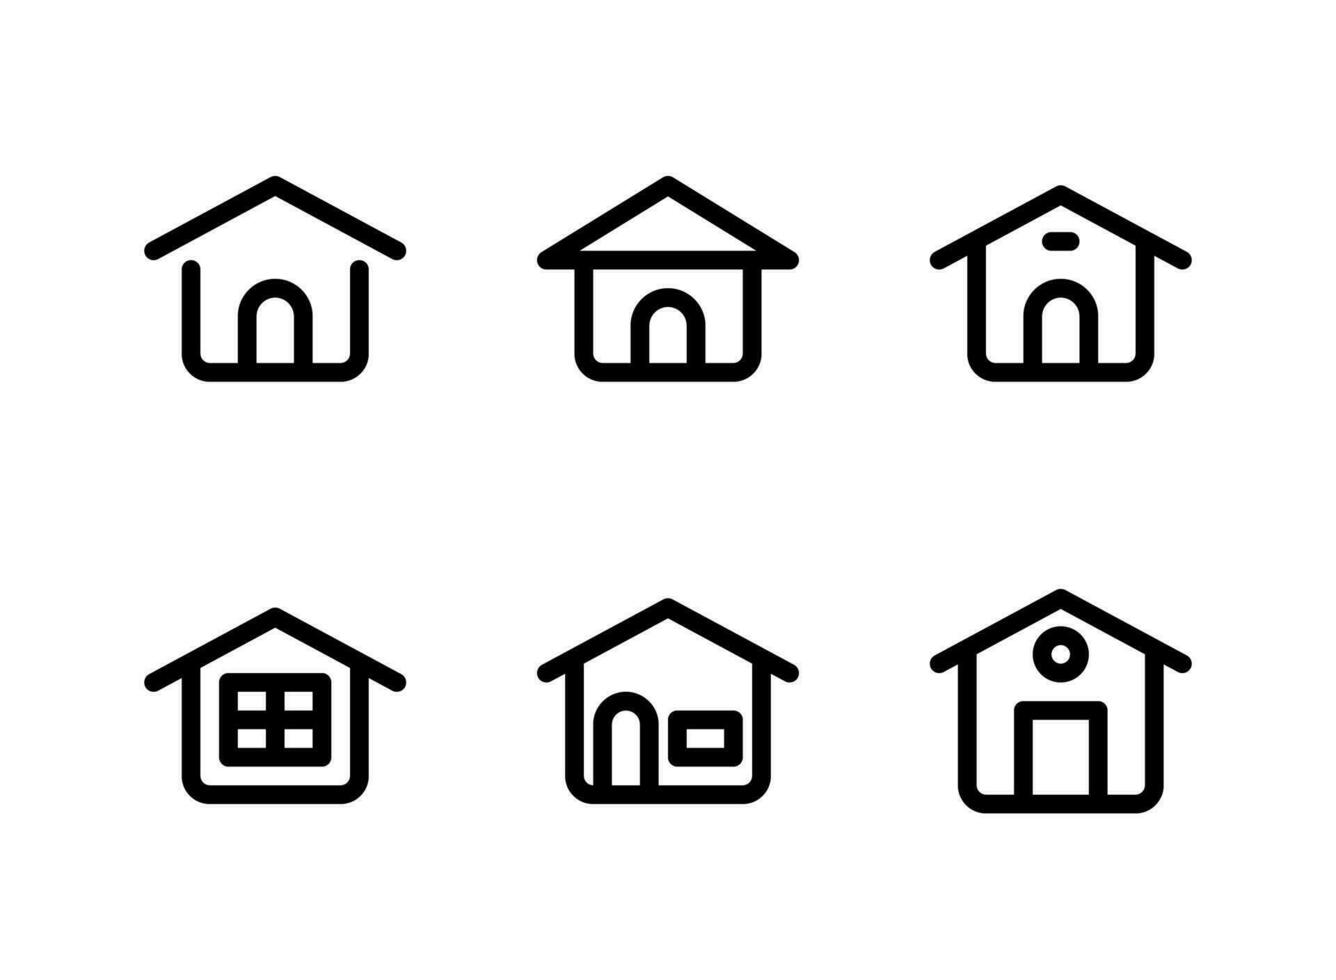 semplice set di icone di linee vettoriali relative alla casa. contiene icone come semplice casa, finestra e altro.